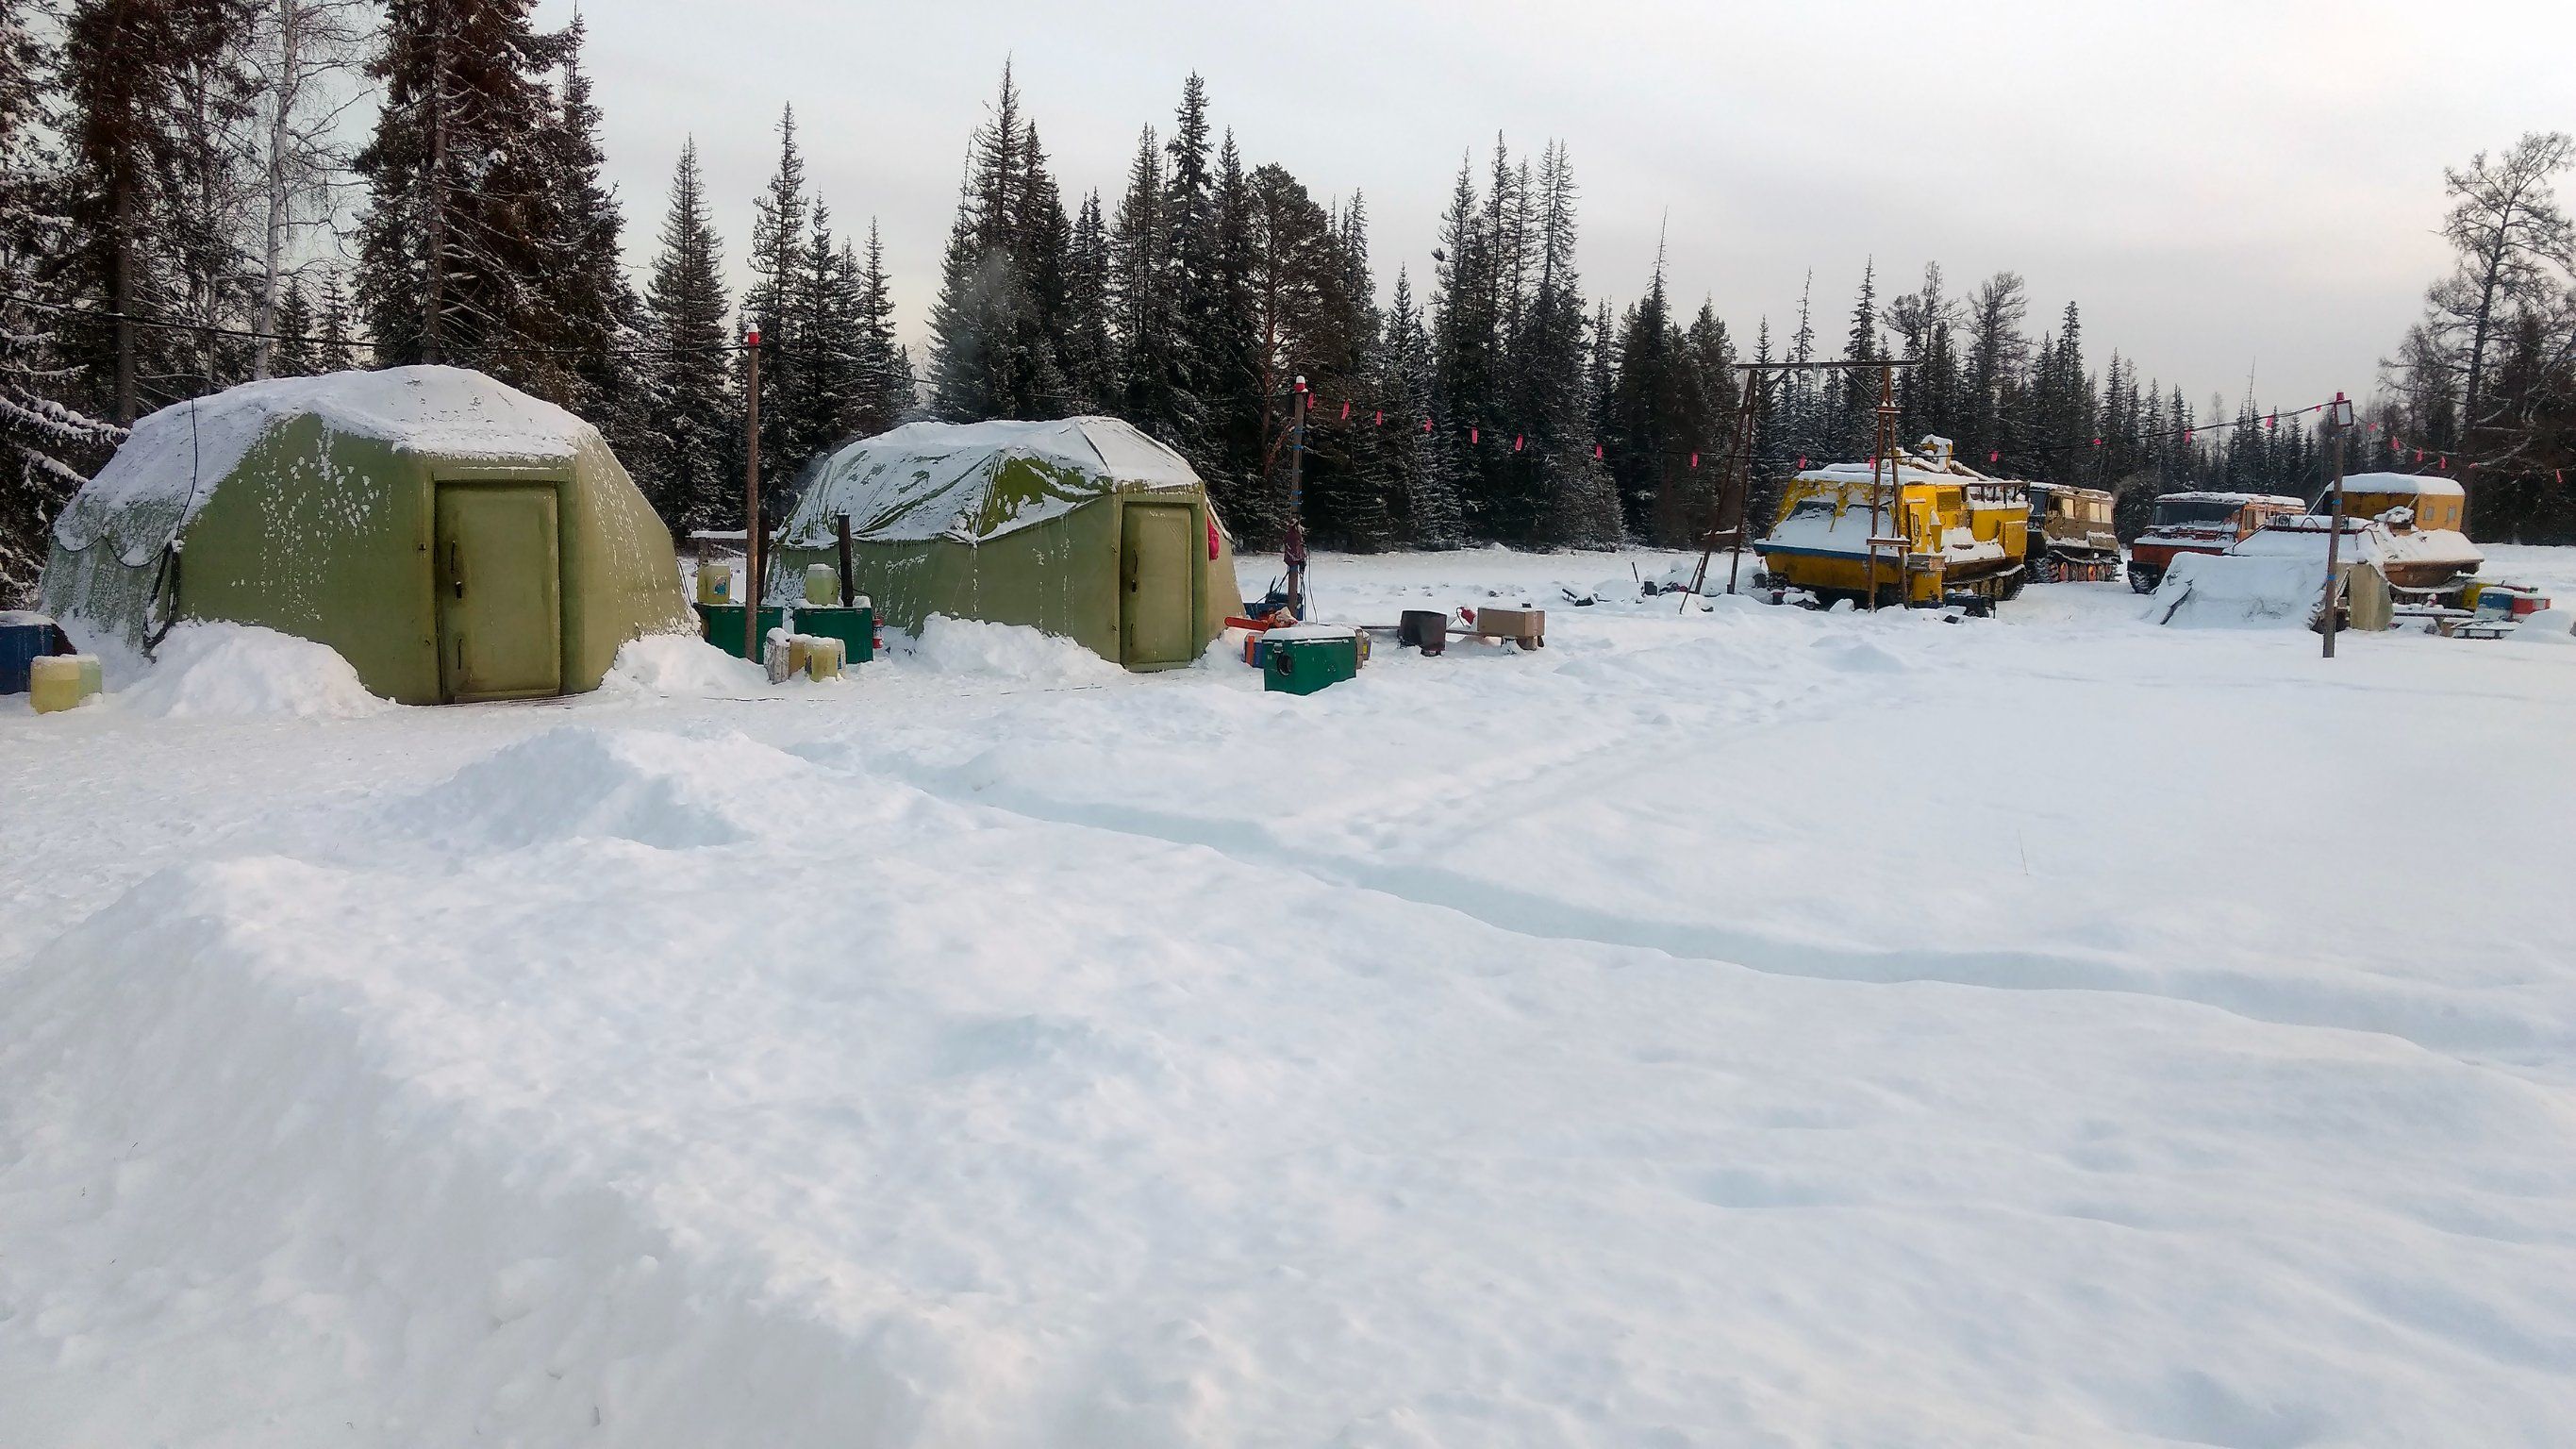 Campamento geológico y geofísico de campo de invierno en Siberia. tiendas inflables de rescate. Vehículos sobre orugas para trabajar en condiciones difíciles.